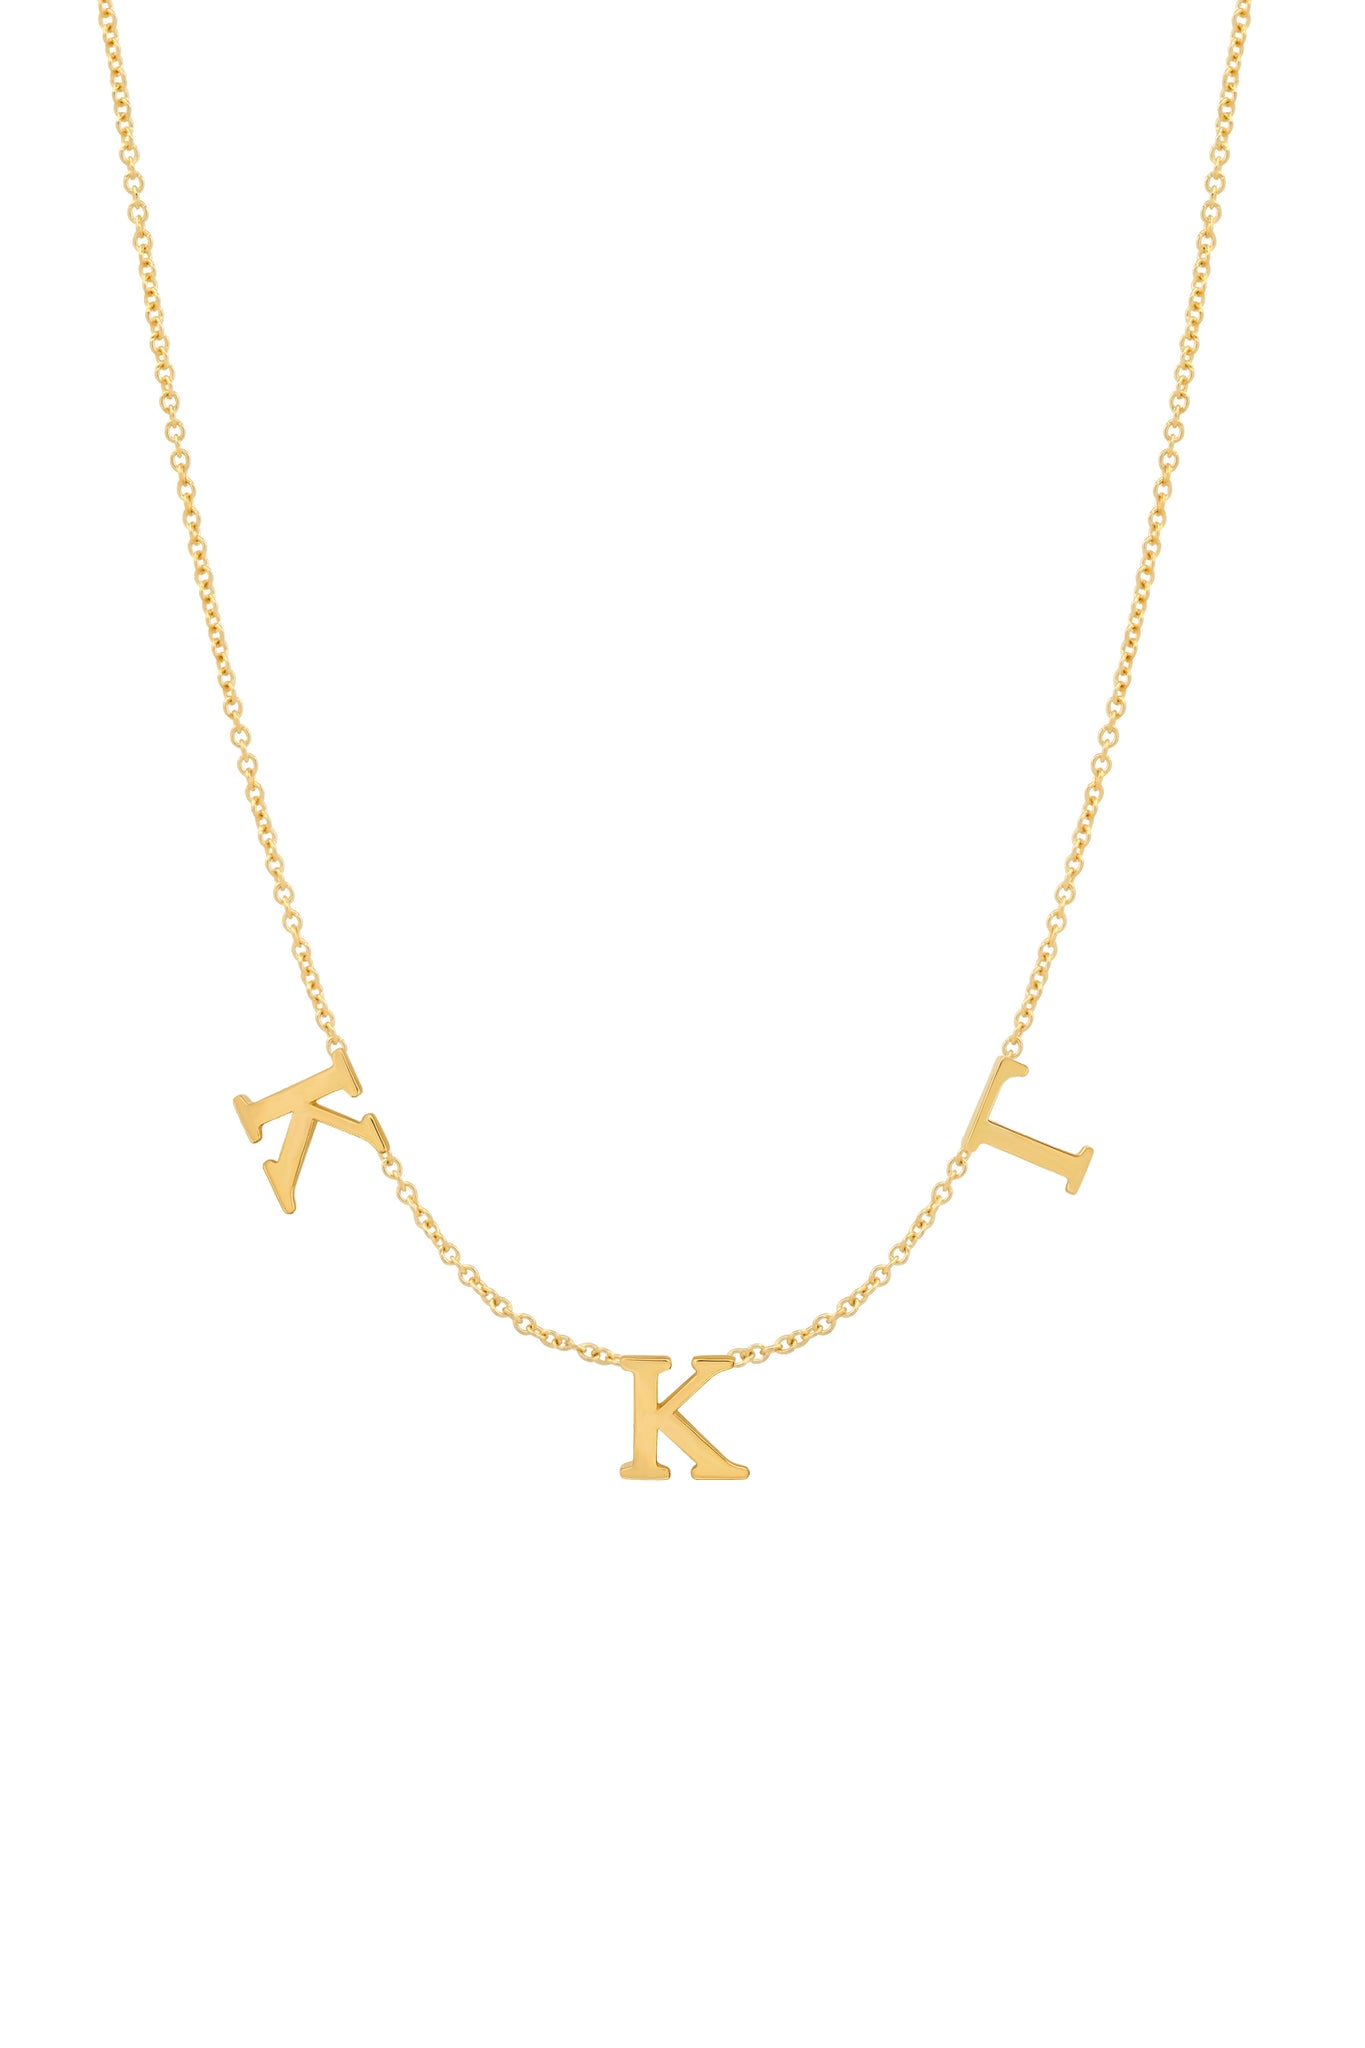 Kappa Kappa Gamma Necklace